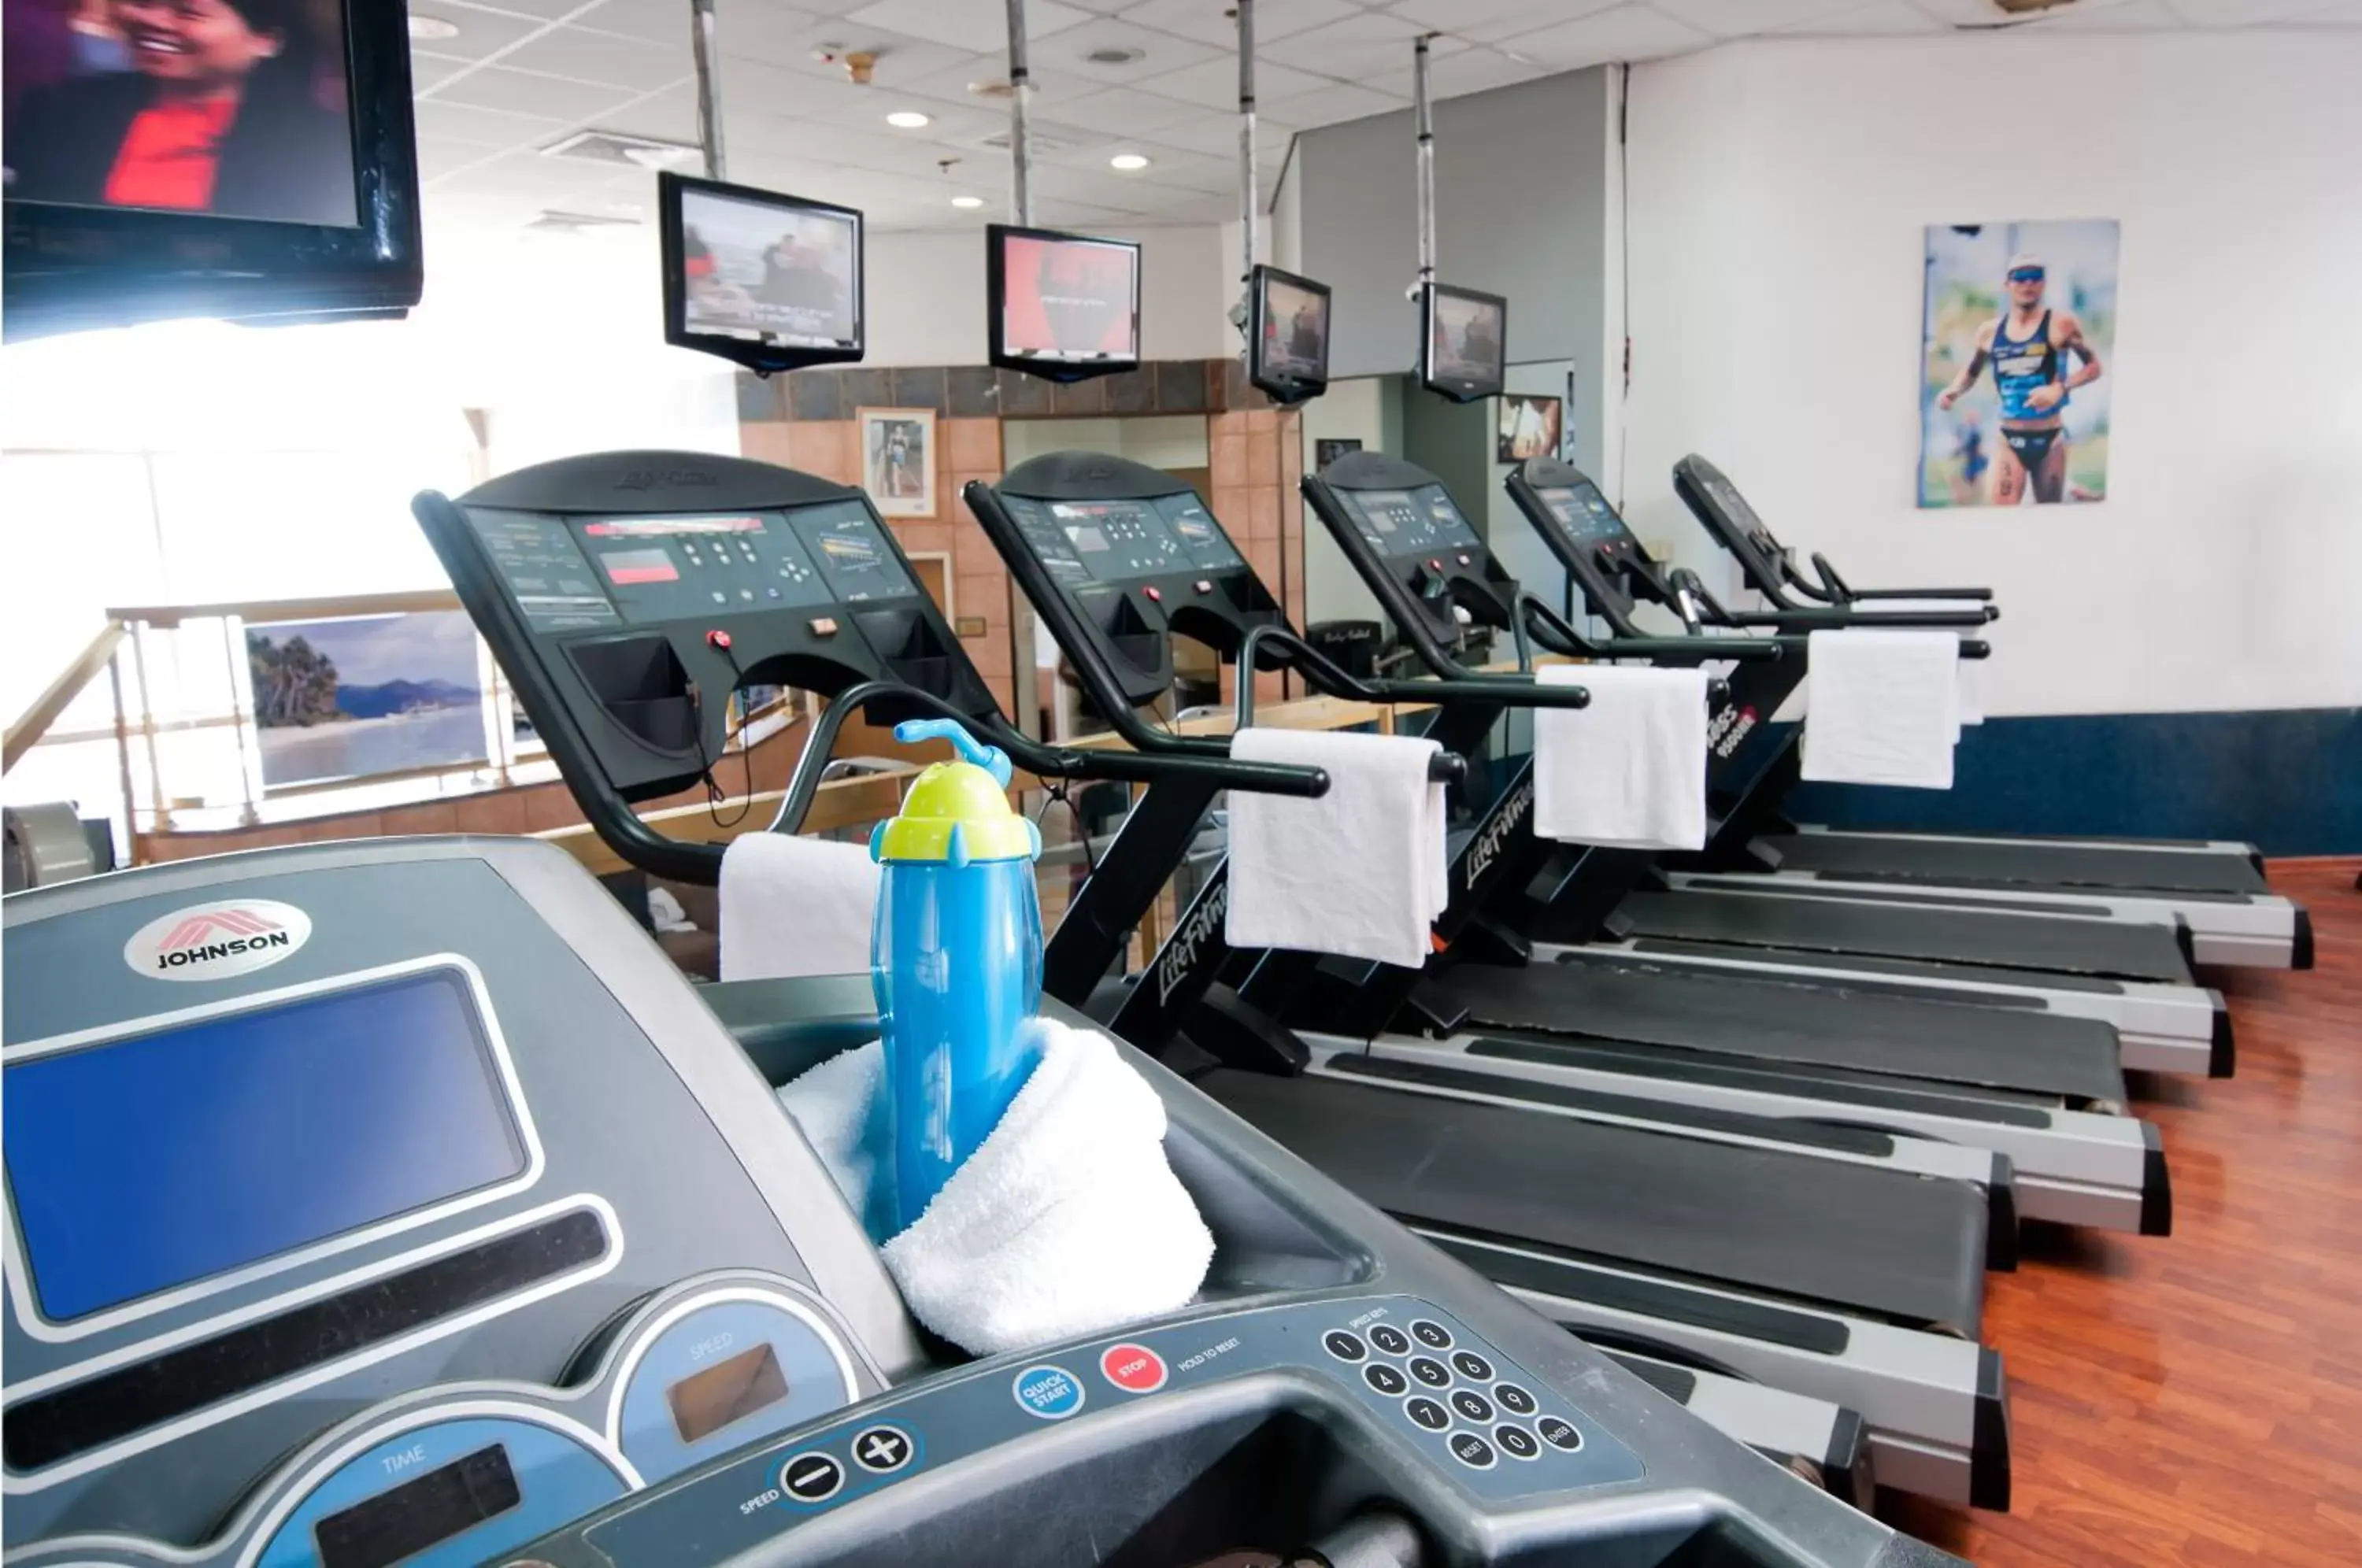 Fitness centre/facilities, Fitness Center/Facilities in Leonardo Hotel Negev